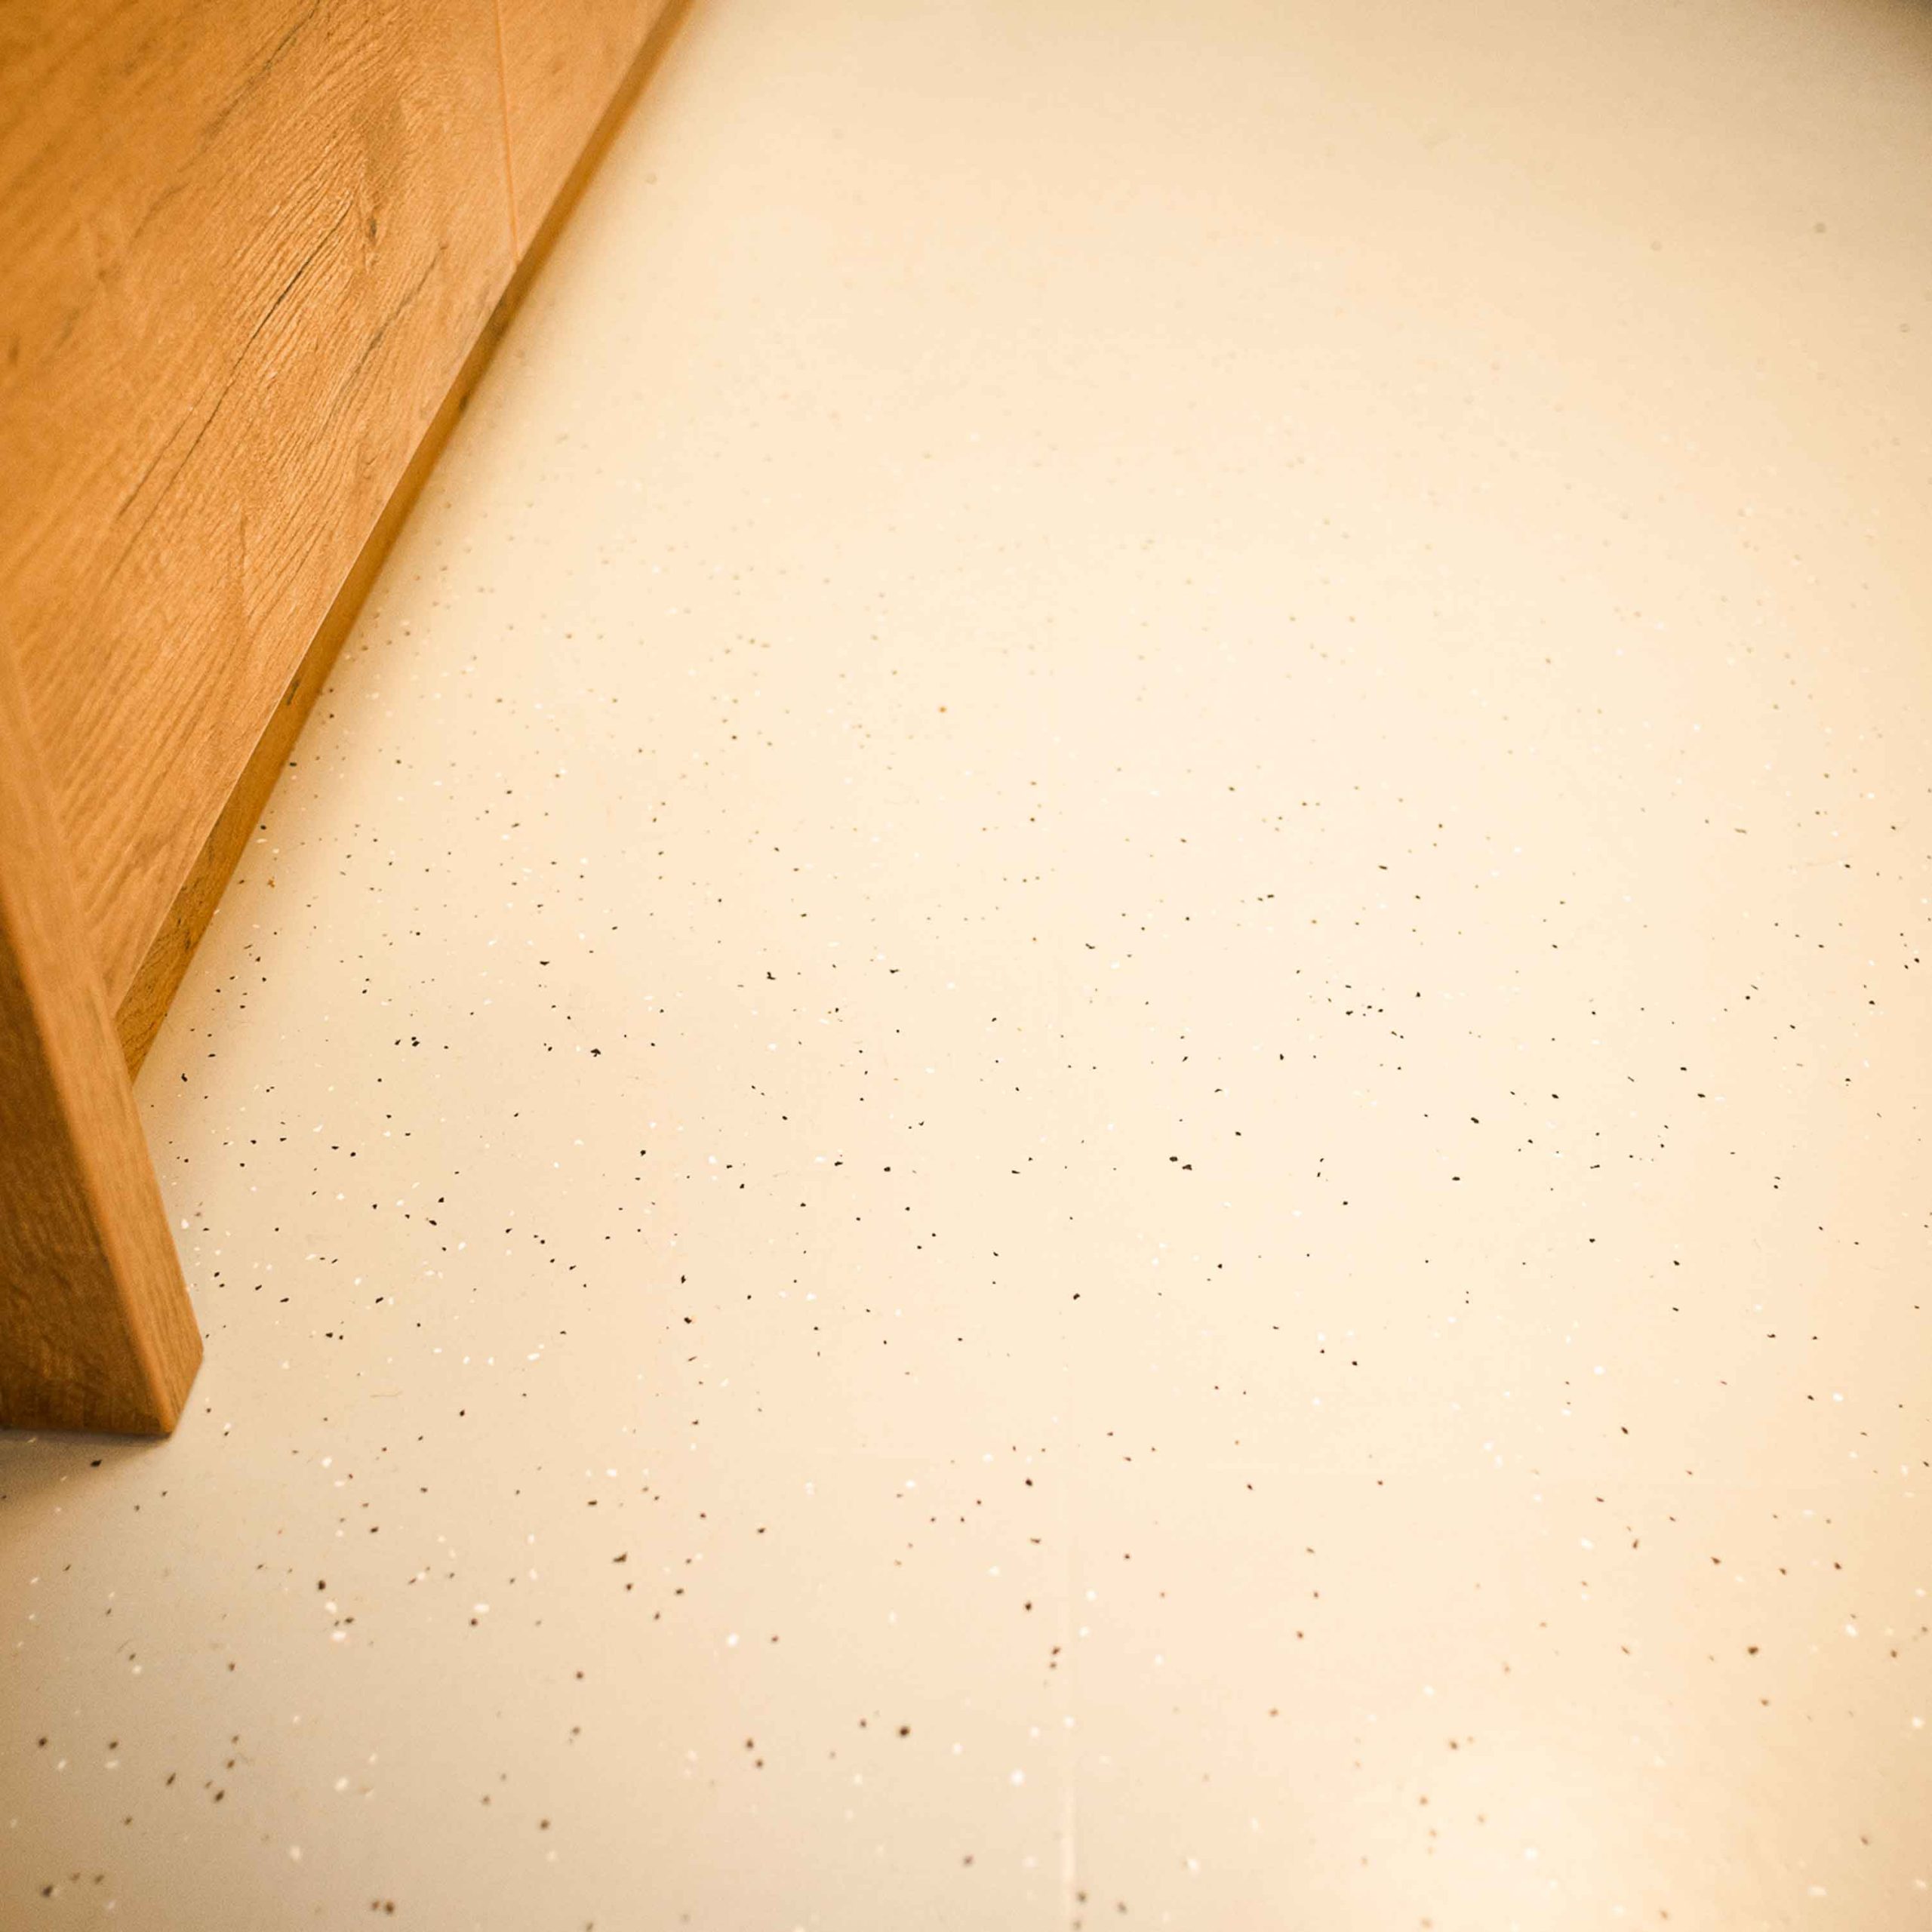 Bild zeigt detail eines frisch sanierten und gechipten Kunststoffboden.